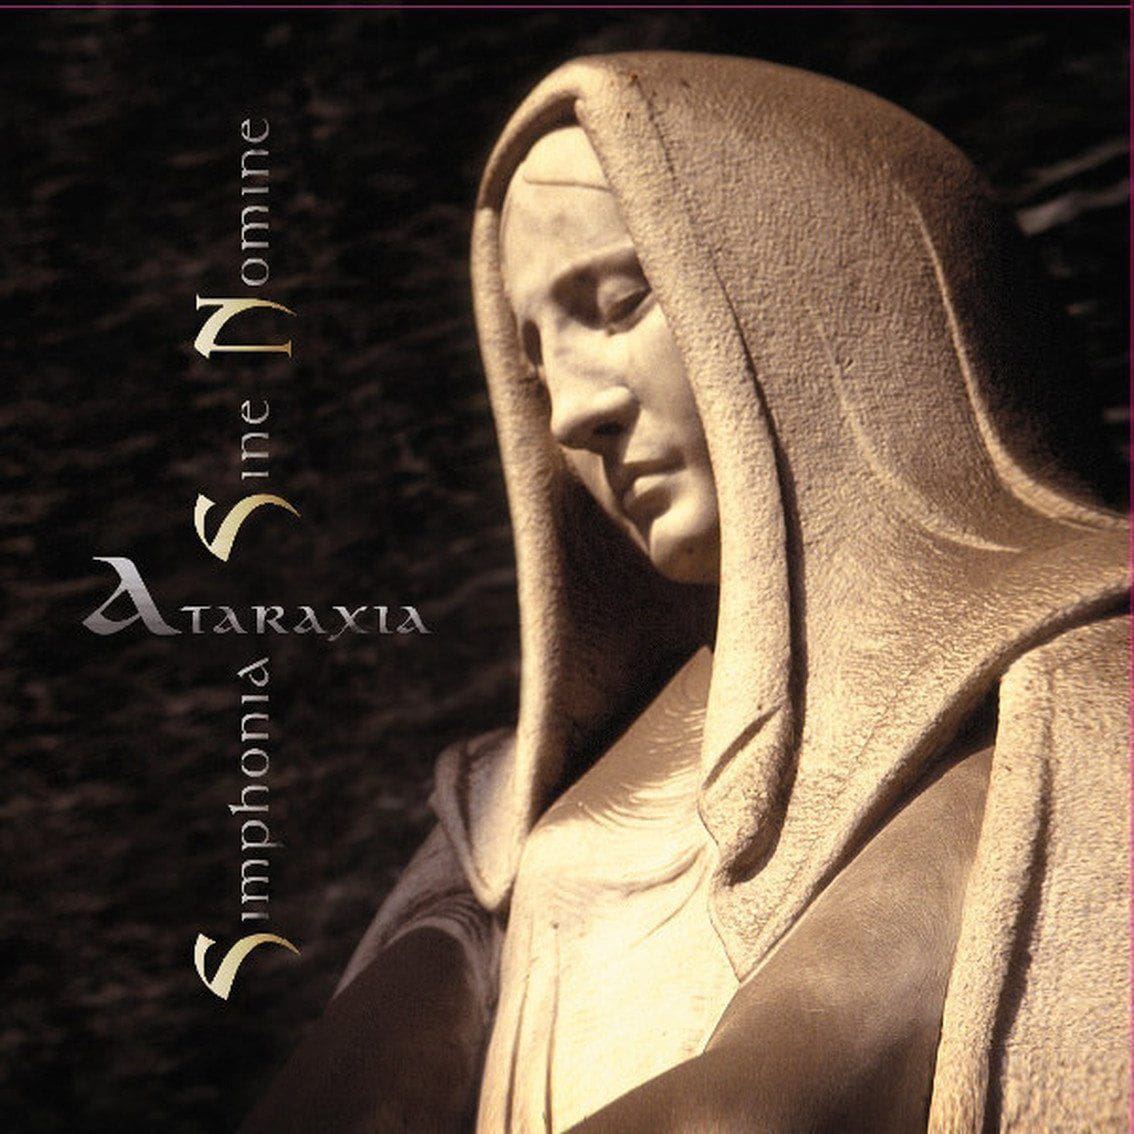 Ataraxia's 'Simphonia Sine Nomine' reissued on vinyl